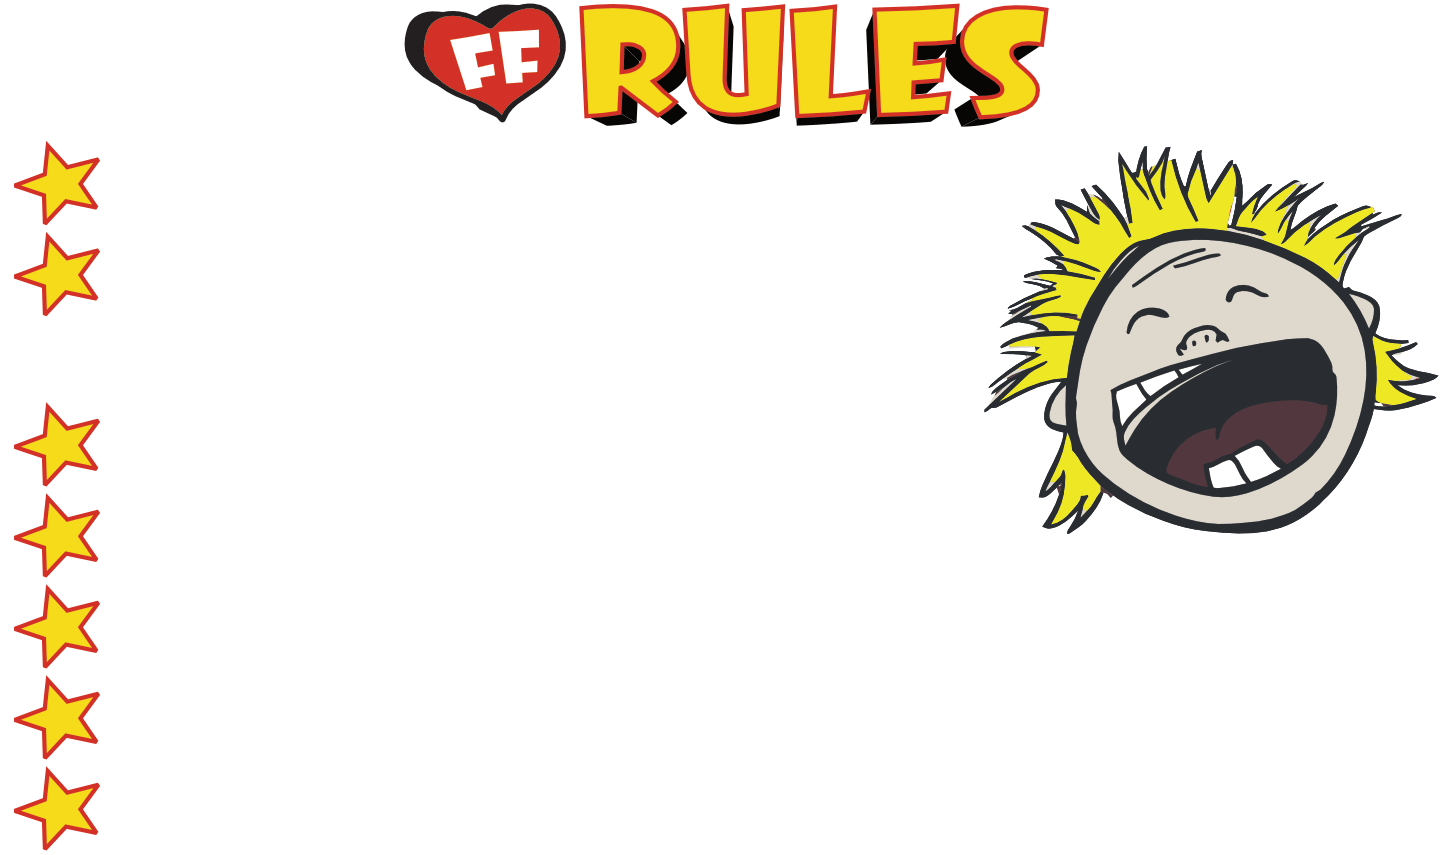 FF Rules